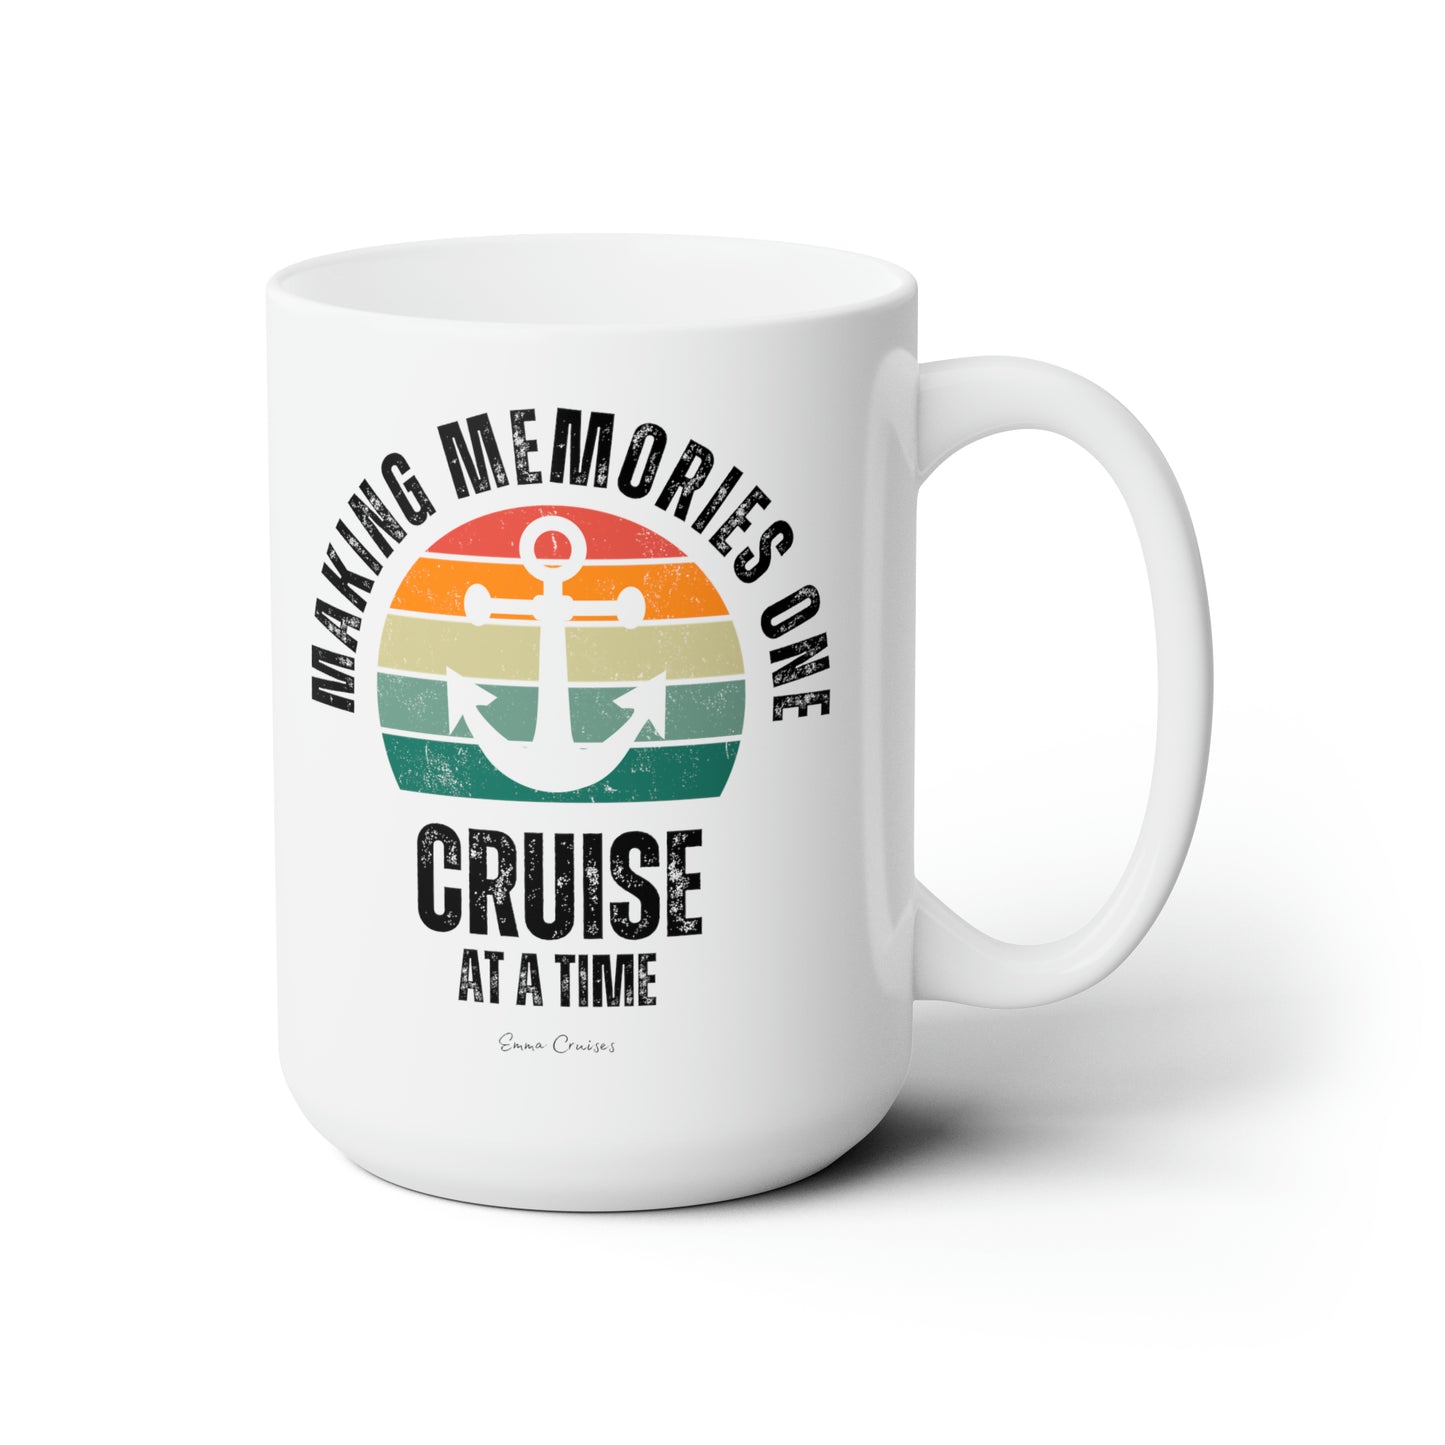 Making Memories One Cruise at a Time - Ceramic Mug